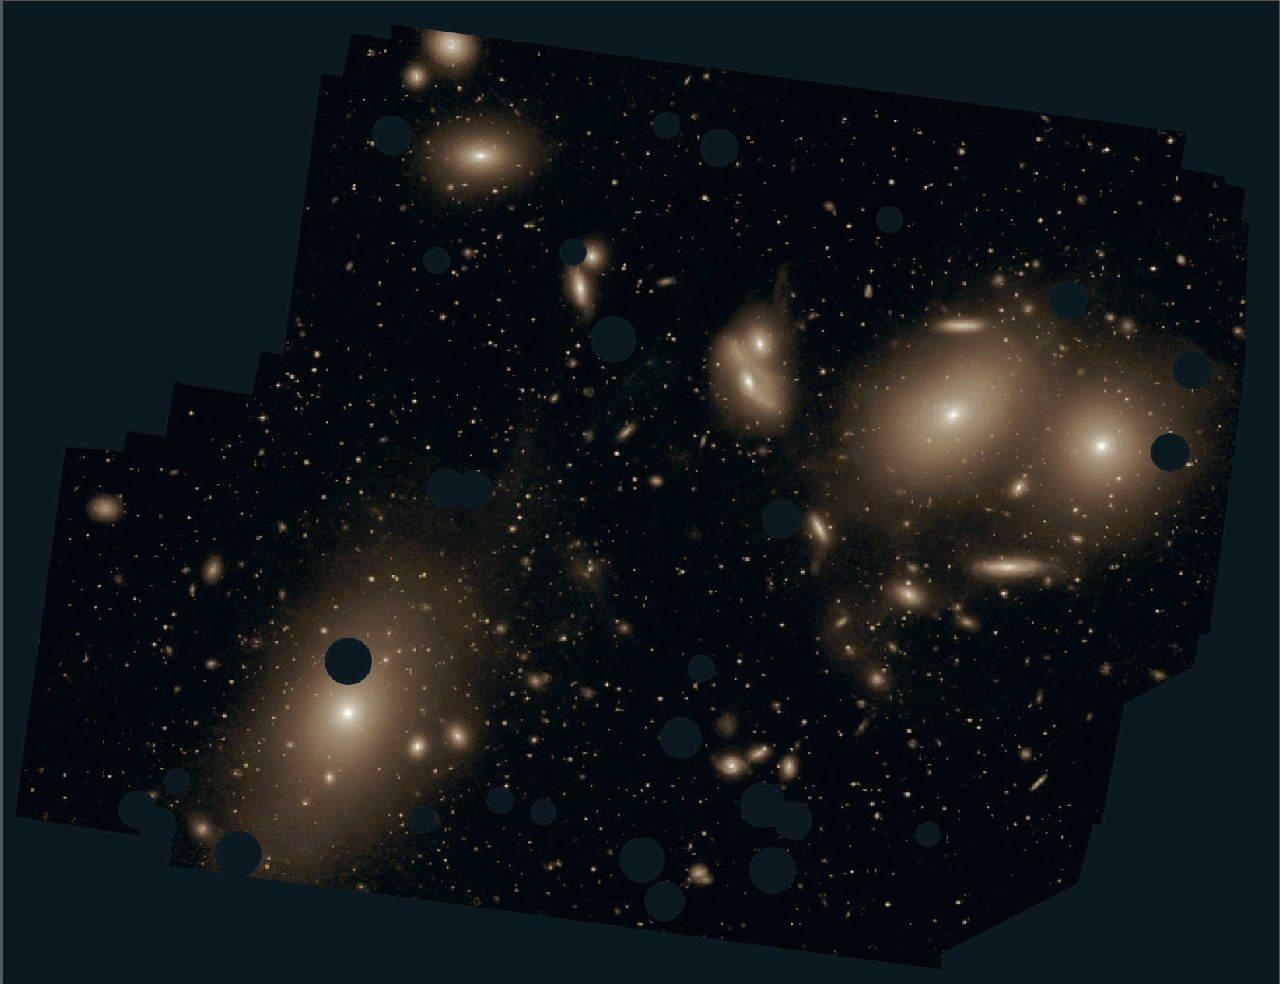  来自欧洲南方天文台的处女座星系团的深度照片黑点是由从图片中消除前景耀眼的恒星造成的